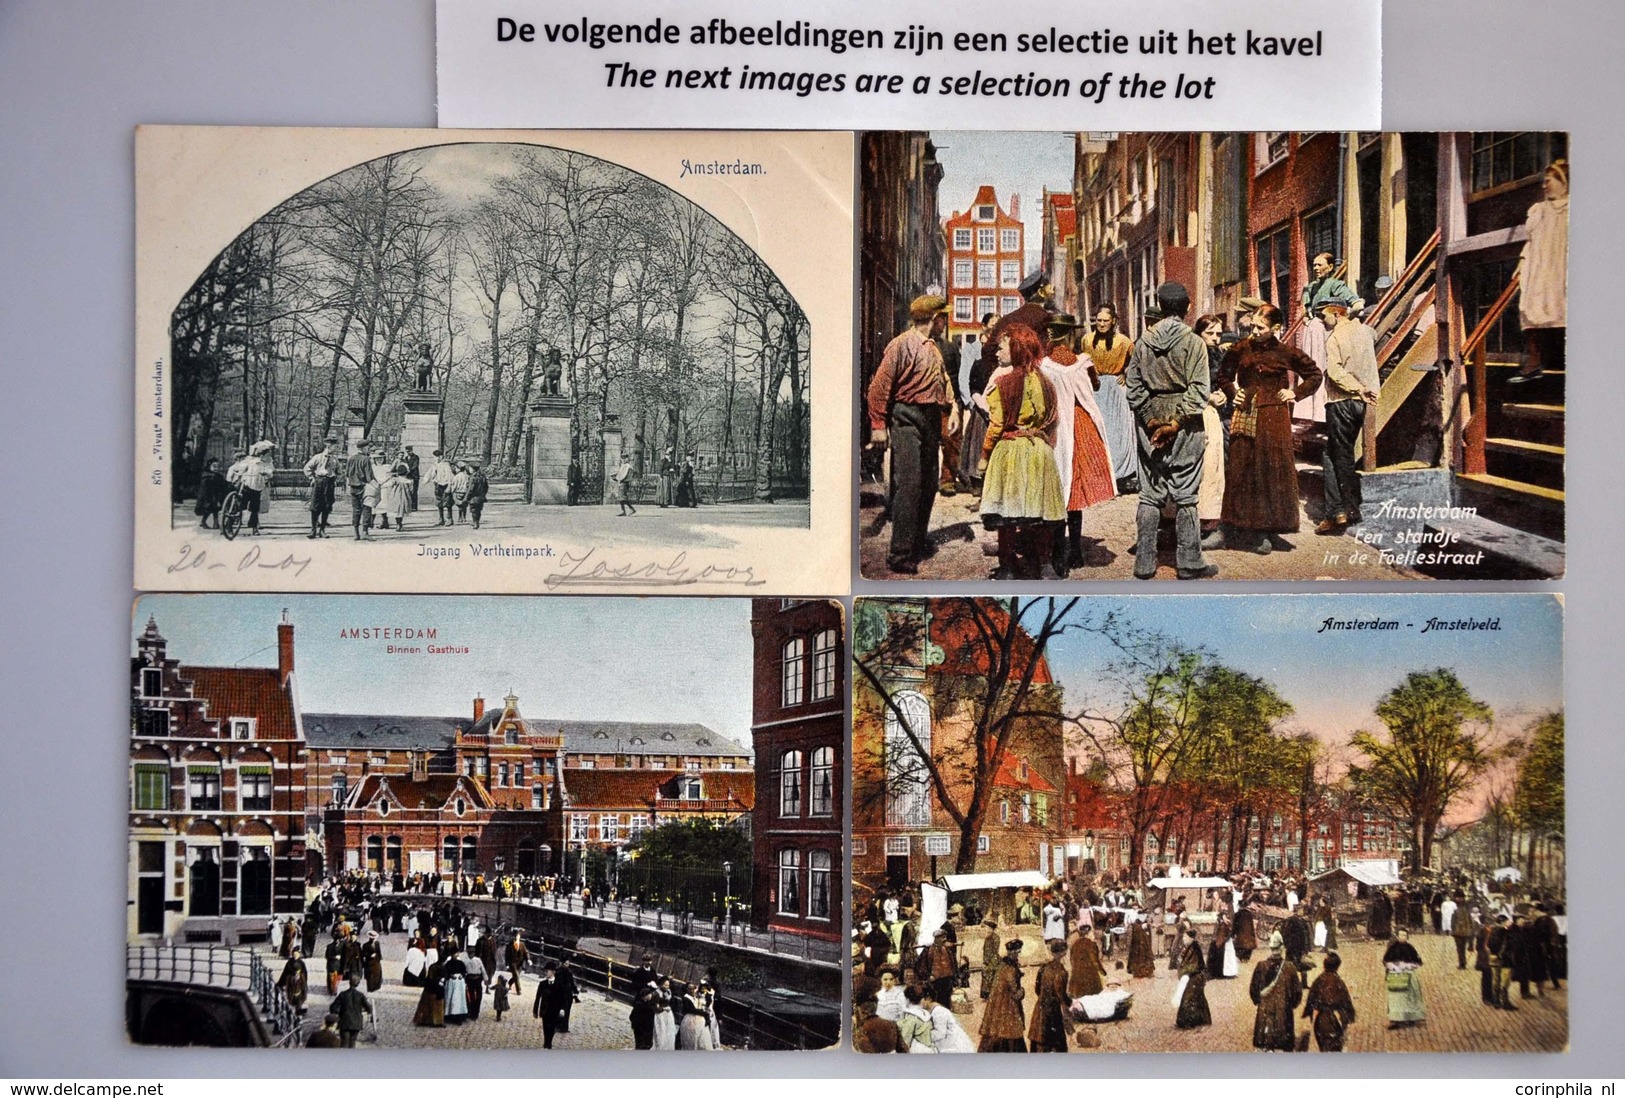 NL Noord-Holland - Non Classificati